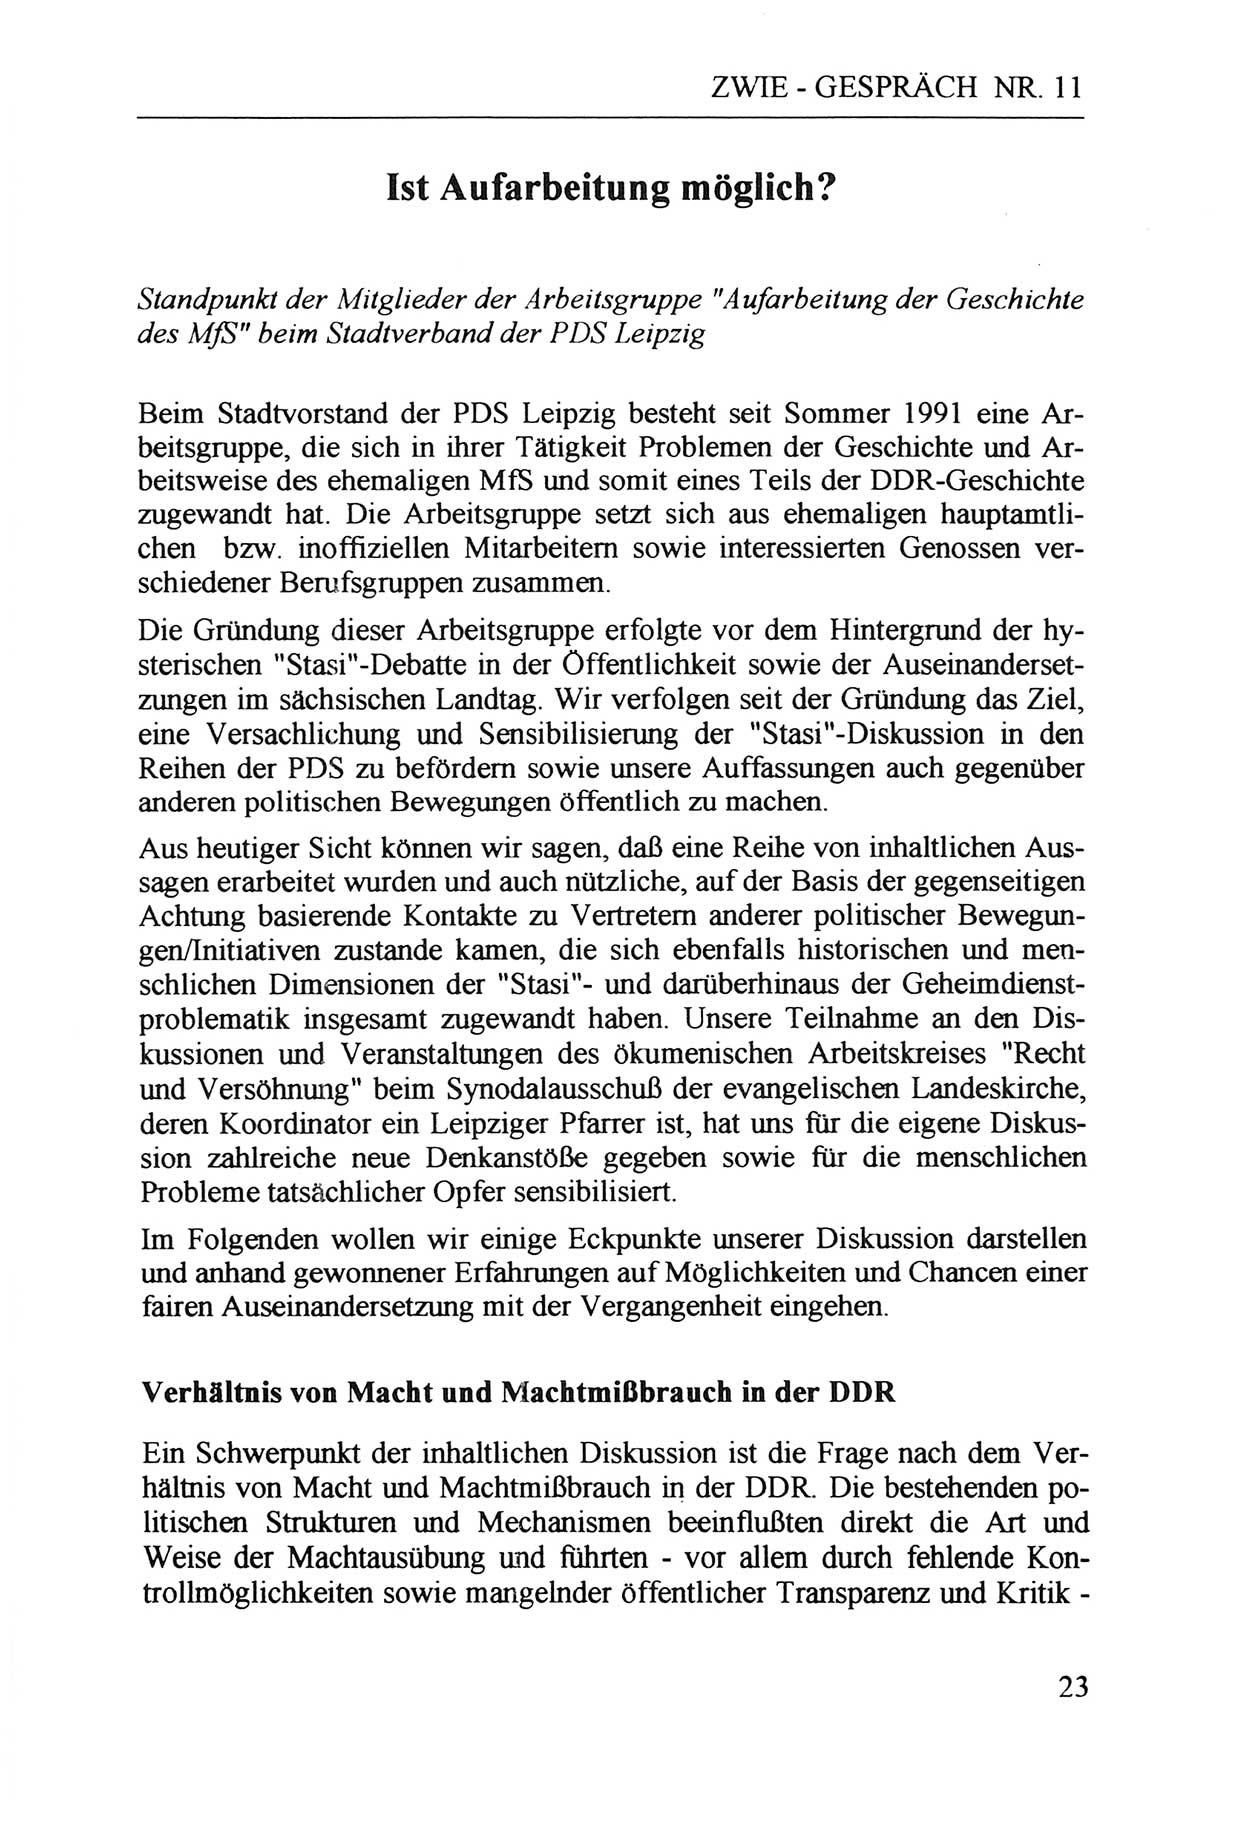 Zwie-Gespräch, Beiträge zur Aufarbeitung der Staatssicherheits-Vergangenheit [Deutsche Demokratische Republik (DDR)], Ausgabe Nr. 11, Berlin 1992, Seite 23 (Zwie-Gespr. Ausg. 11 1992, S. 23)